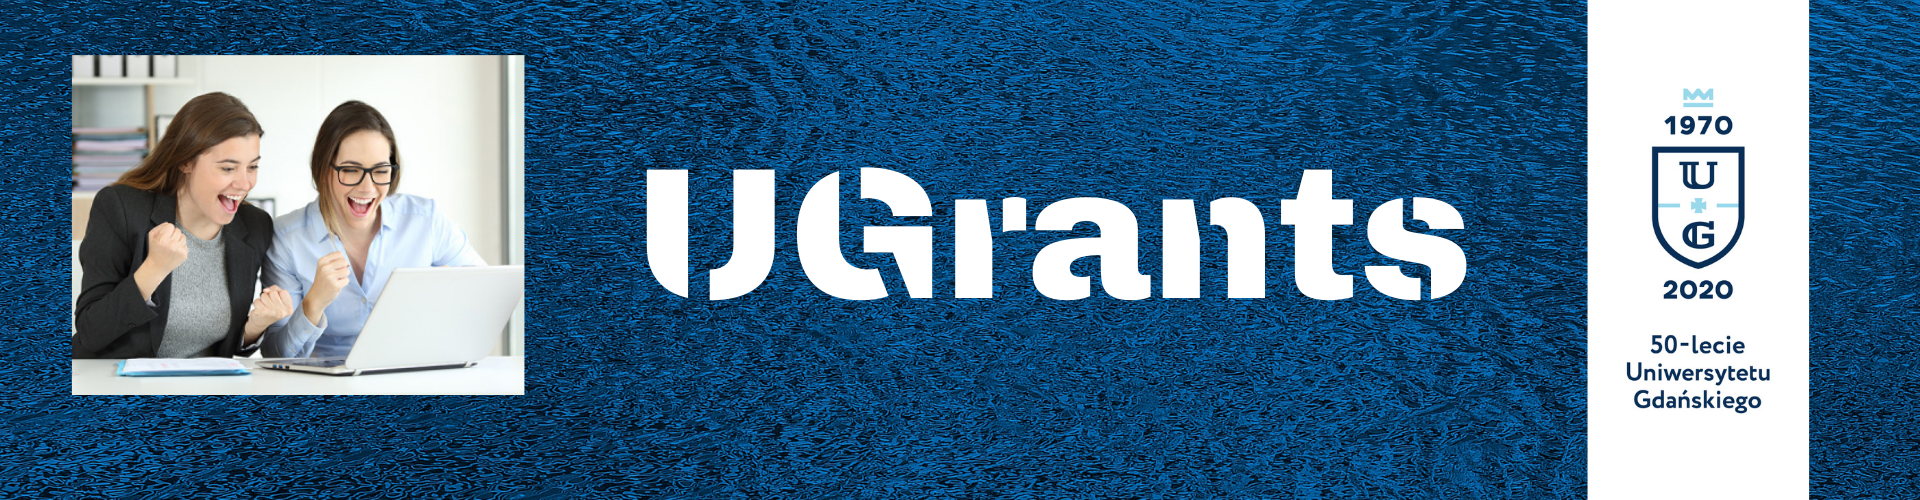 UGrants - nowa edycja programu małych grantów